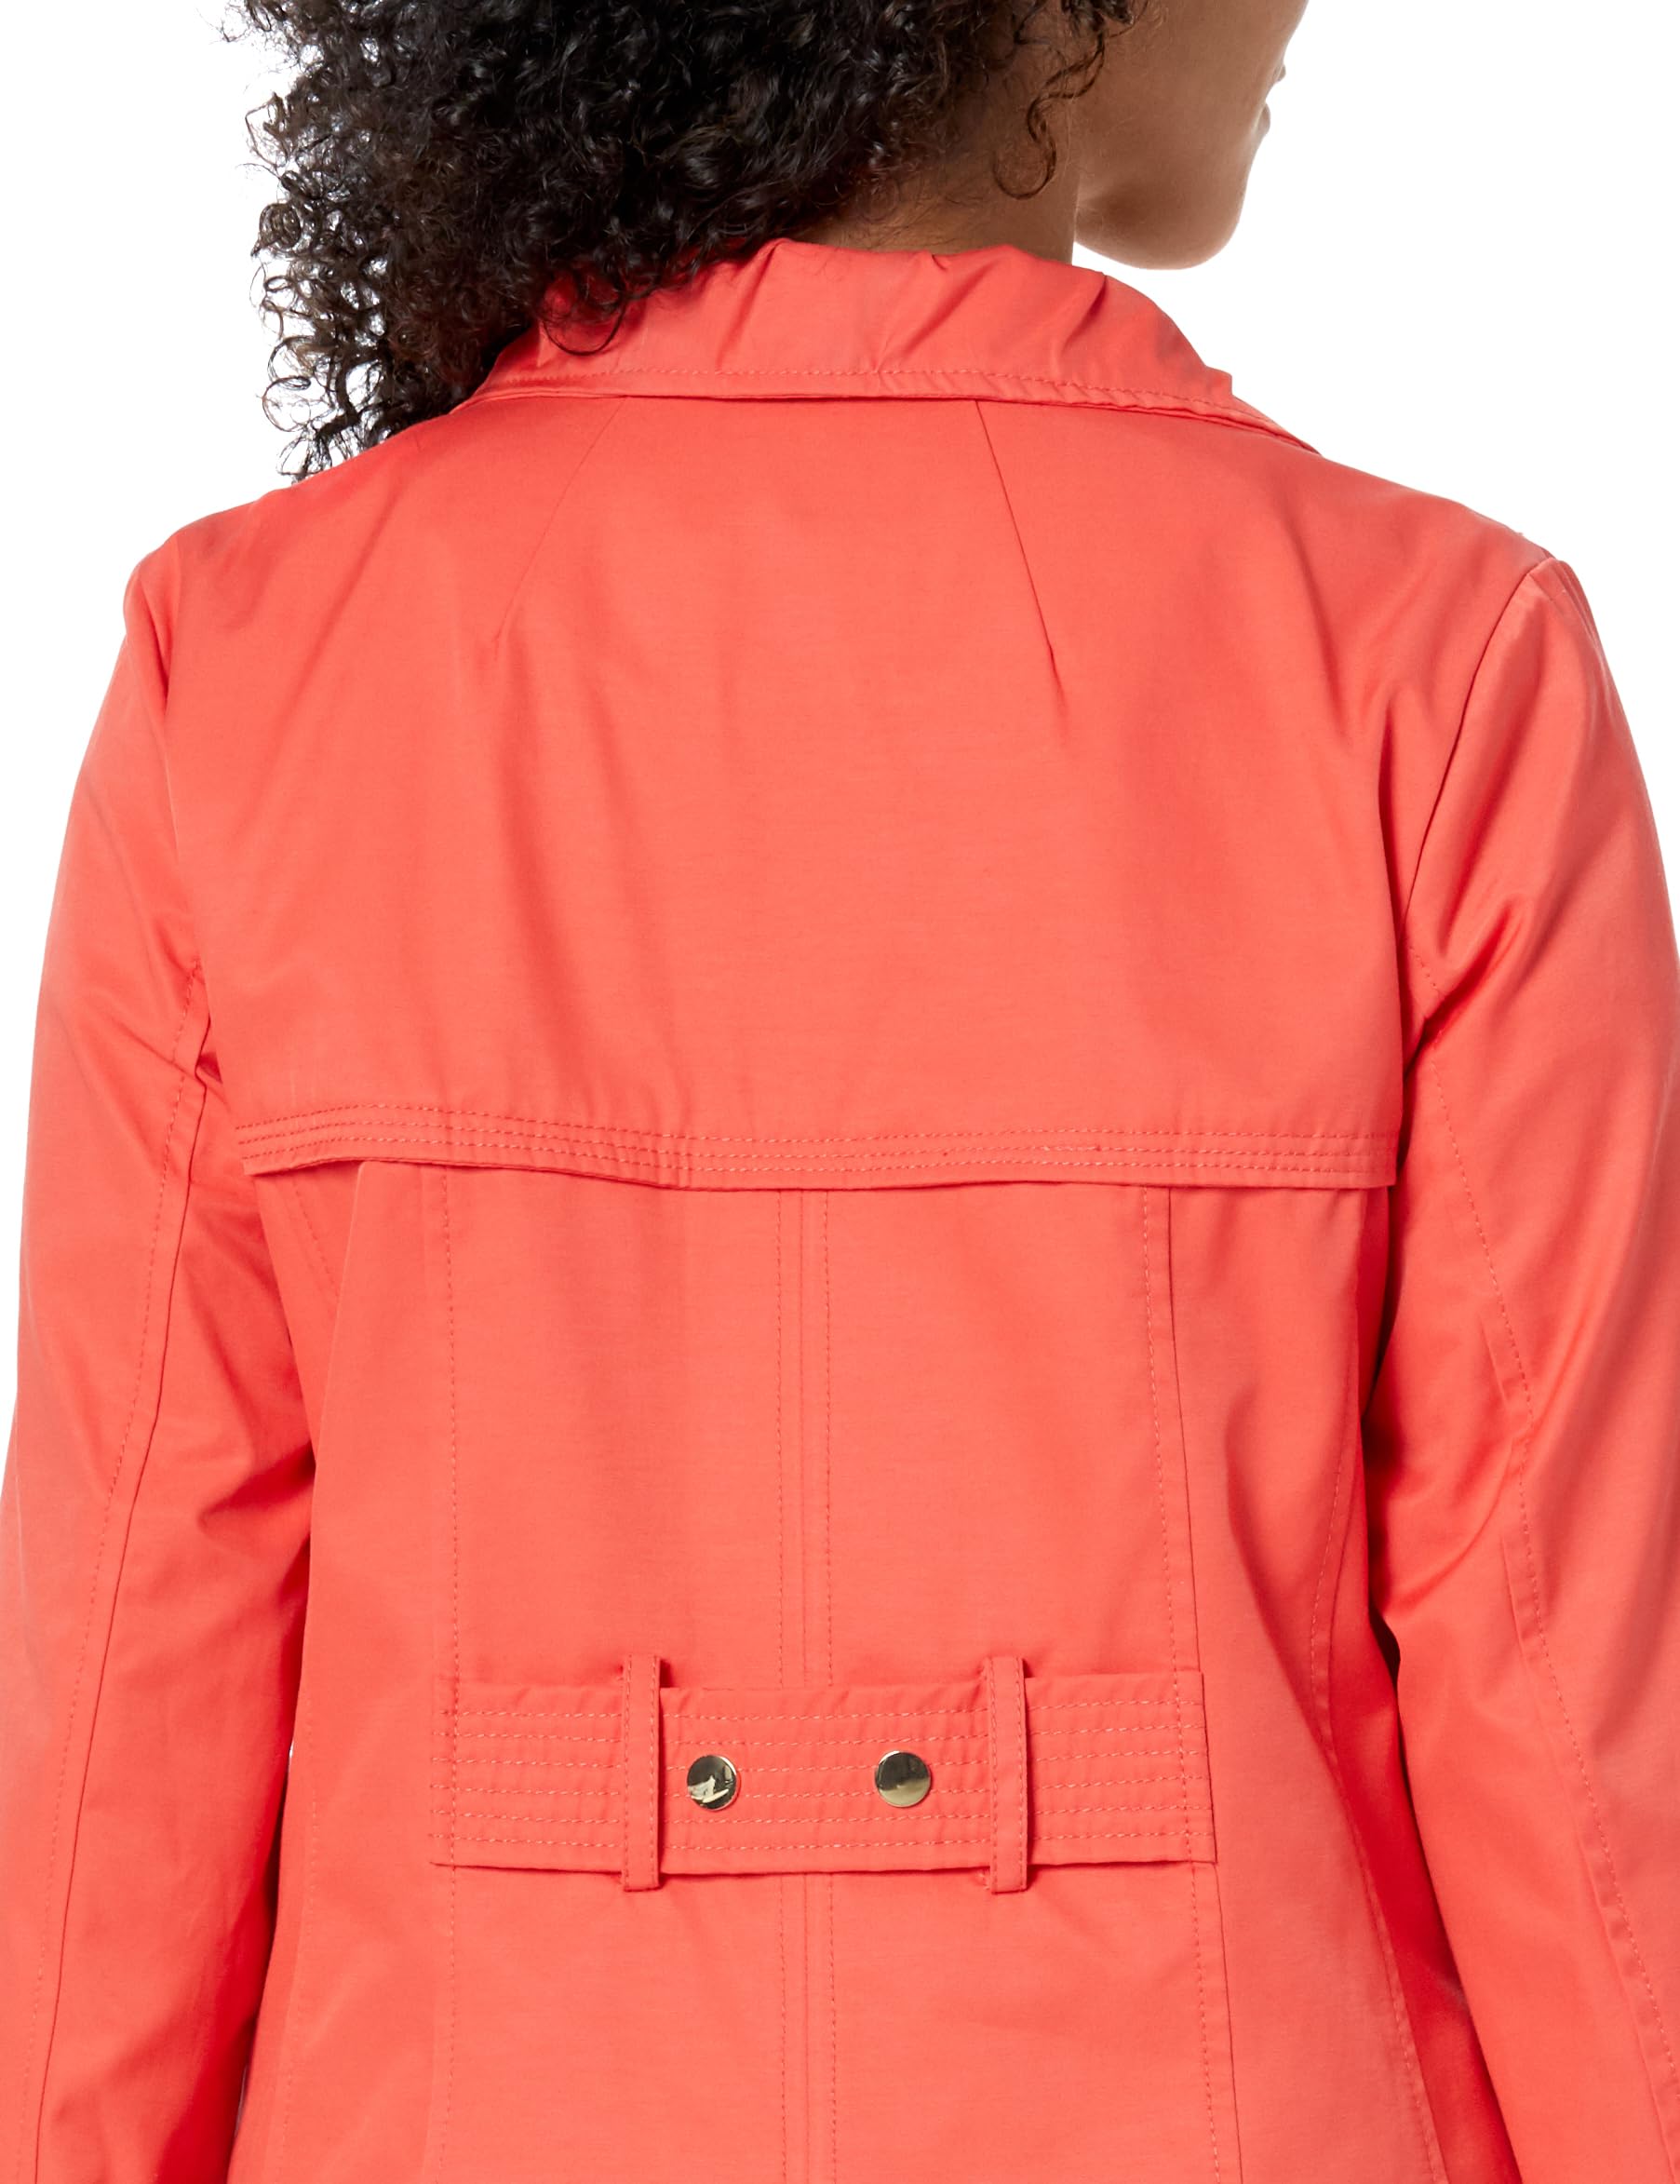 Jones New York Women's Plus Size Water-Resistant Rain Jacket Coat